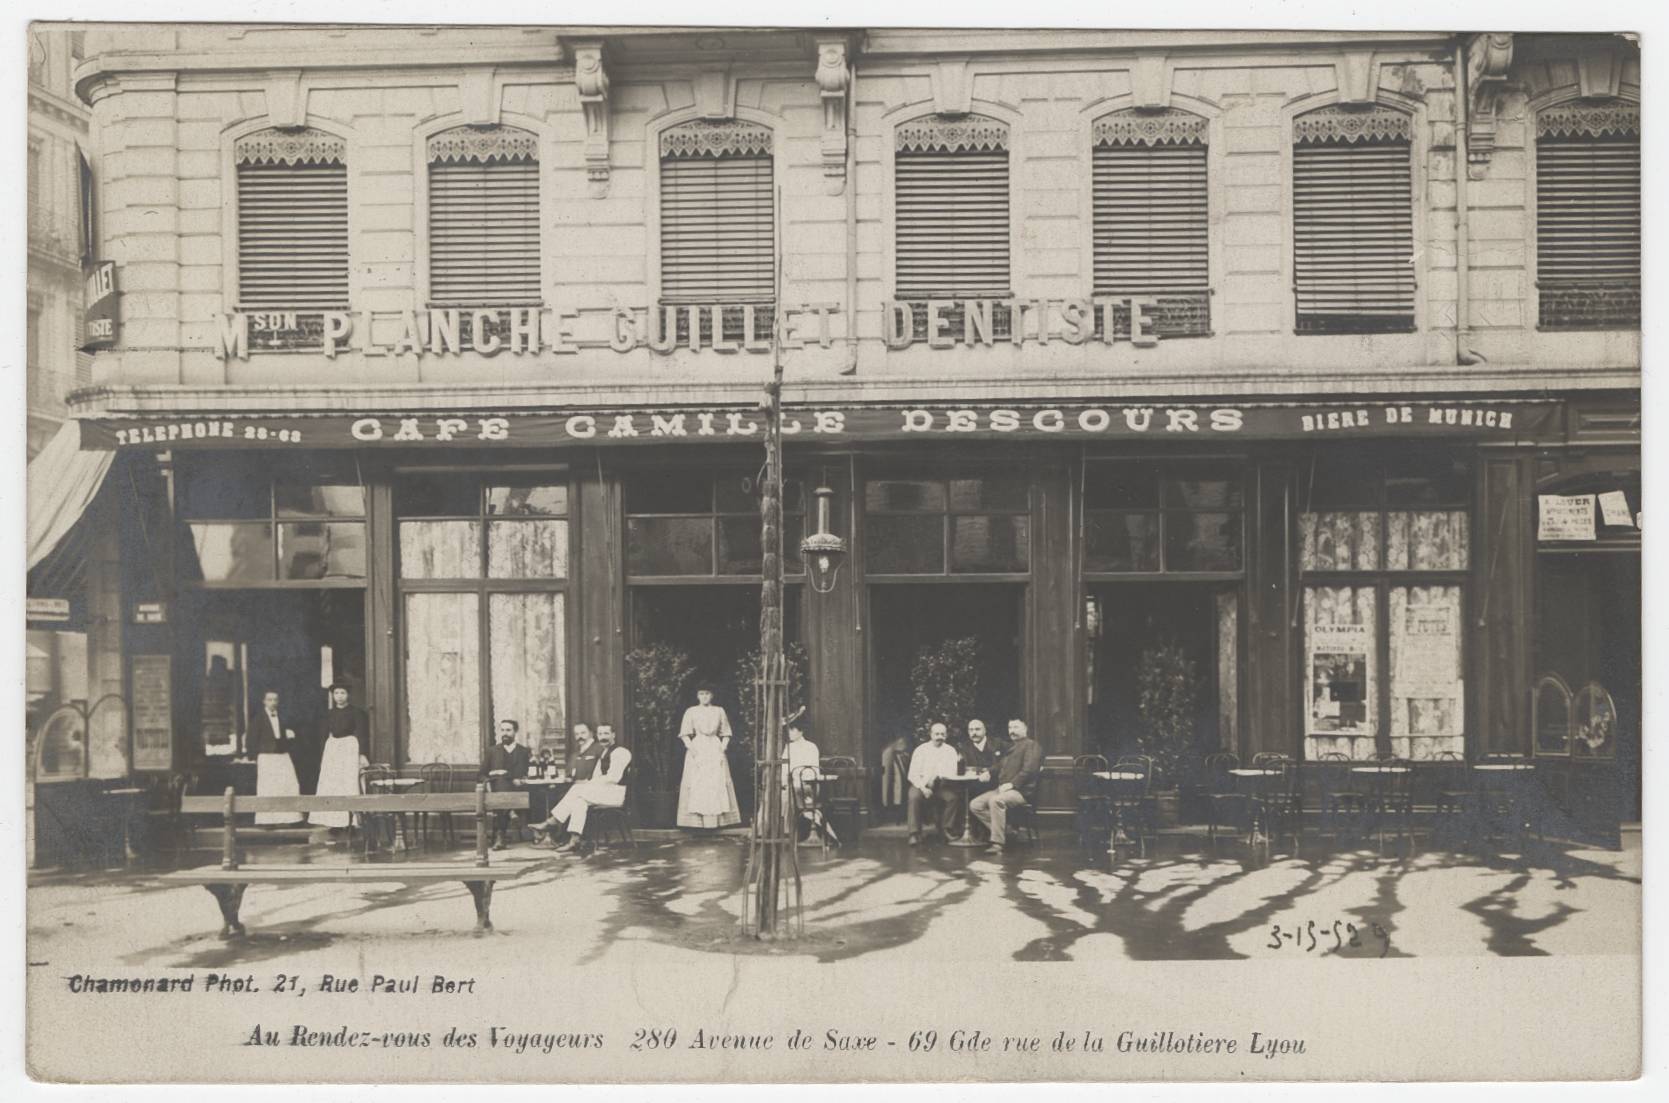 Au Rendez-vous des Voyageurs - 280 avenue de Saxe, 69 grande rue de la Guillotière, Lyon : carte postale NB (vers 1910, cote : 4FI/4159)